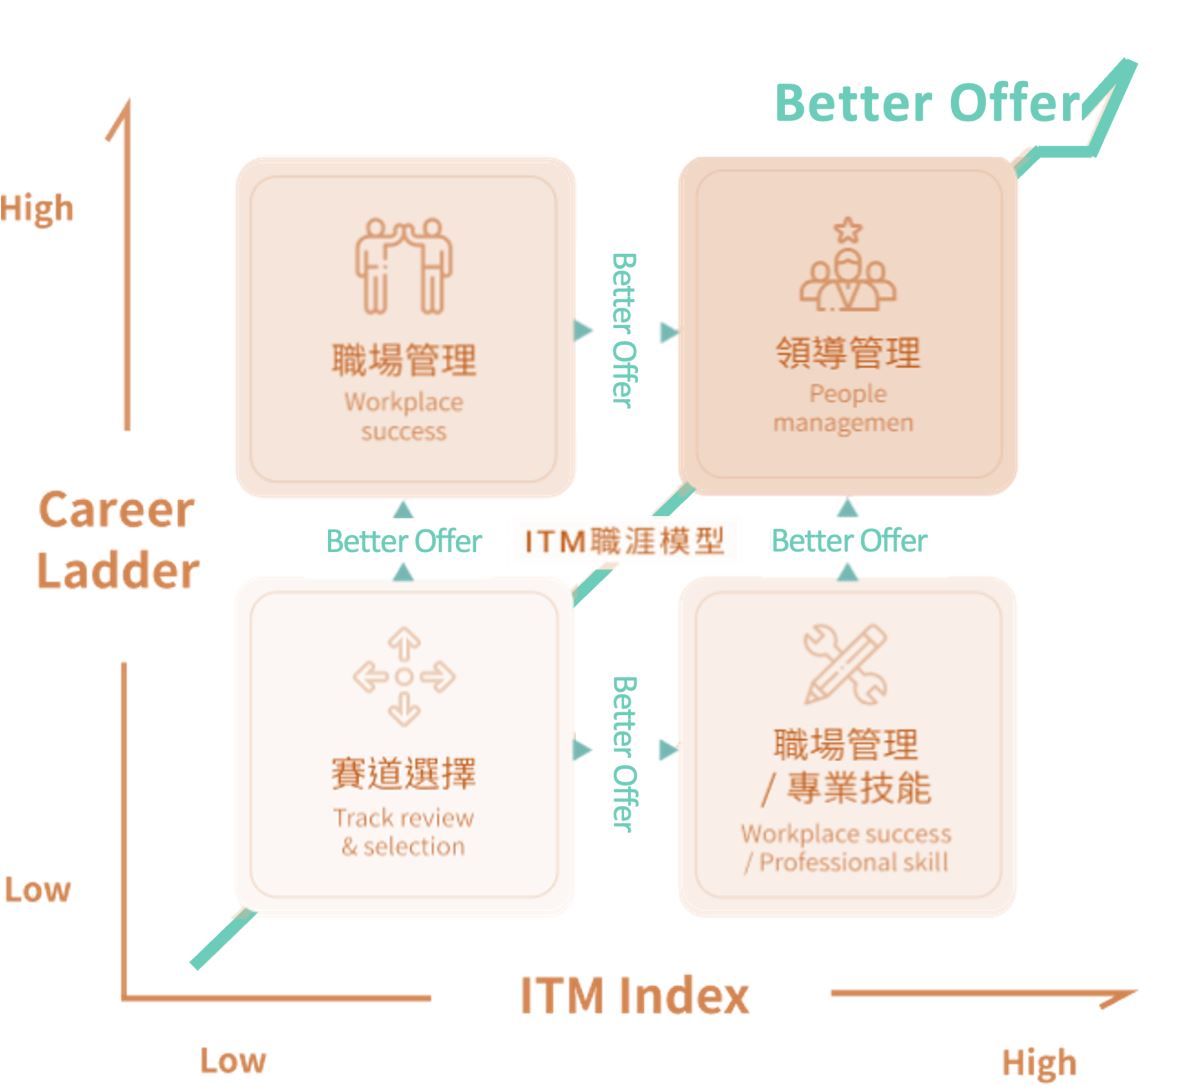 ITM 職涯模型—Better Offer